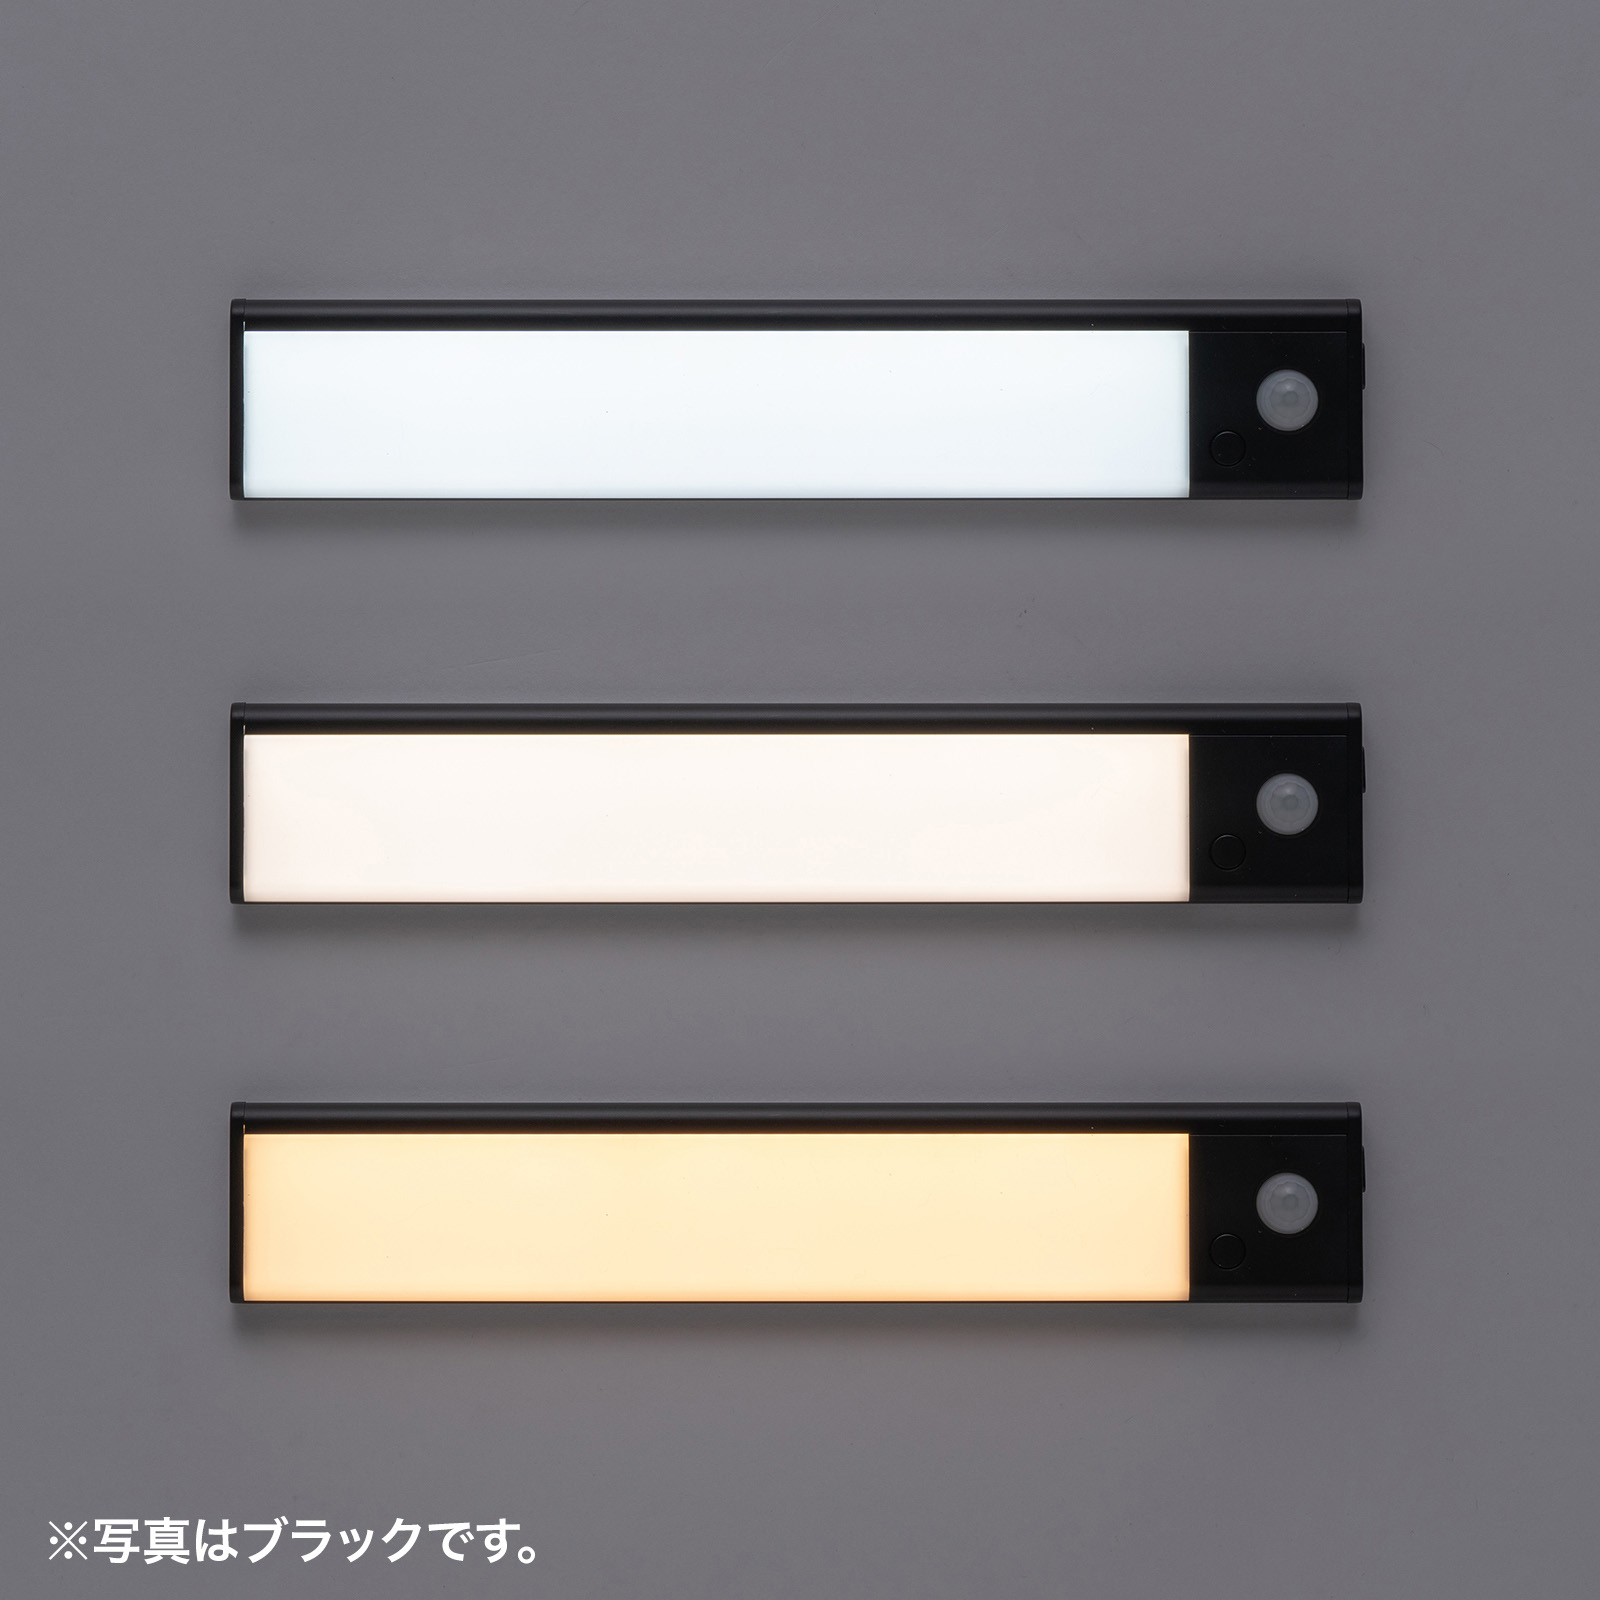 人感センサーライト LEDセンサーライト USBライト 薄型 充電式 最大350ルーメン 3色色温度変更 明るさ無段階 23.3cm シルバー 800-LED072SV